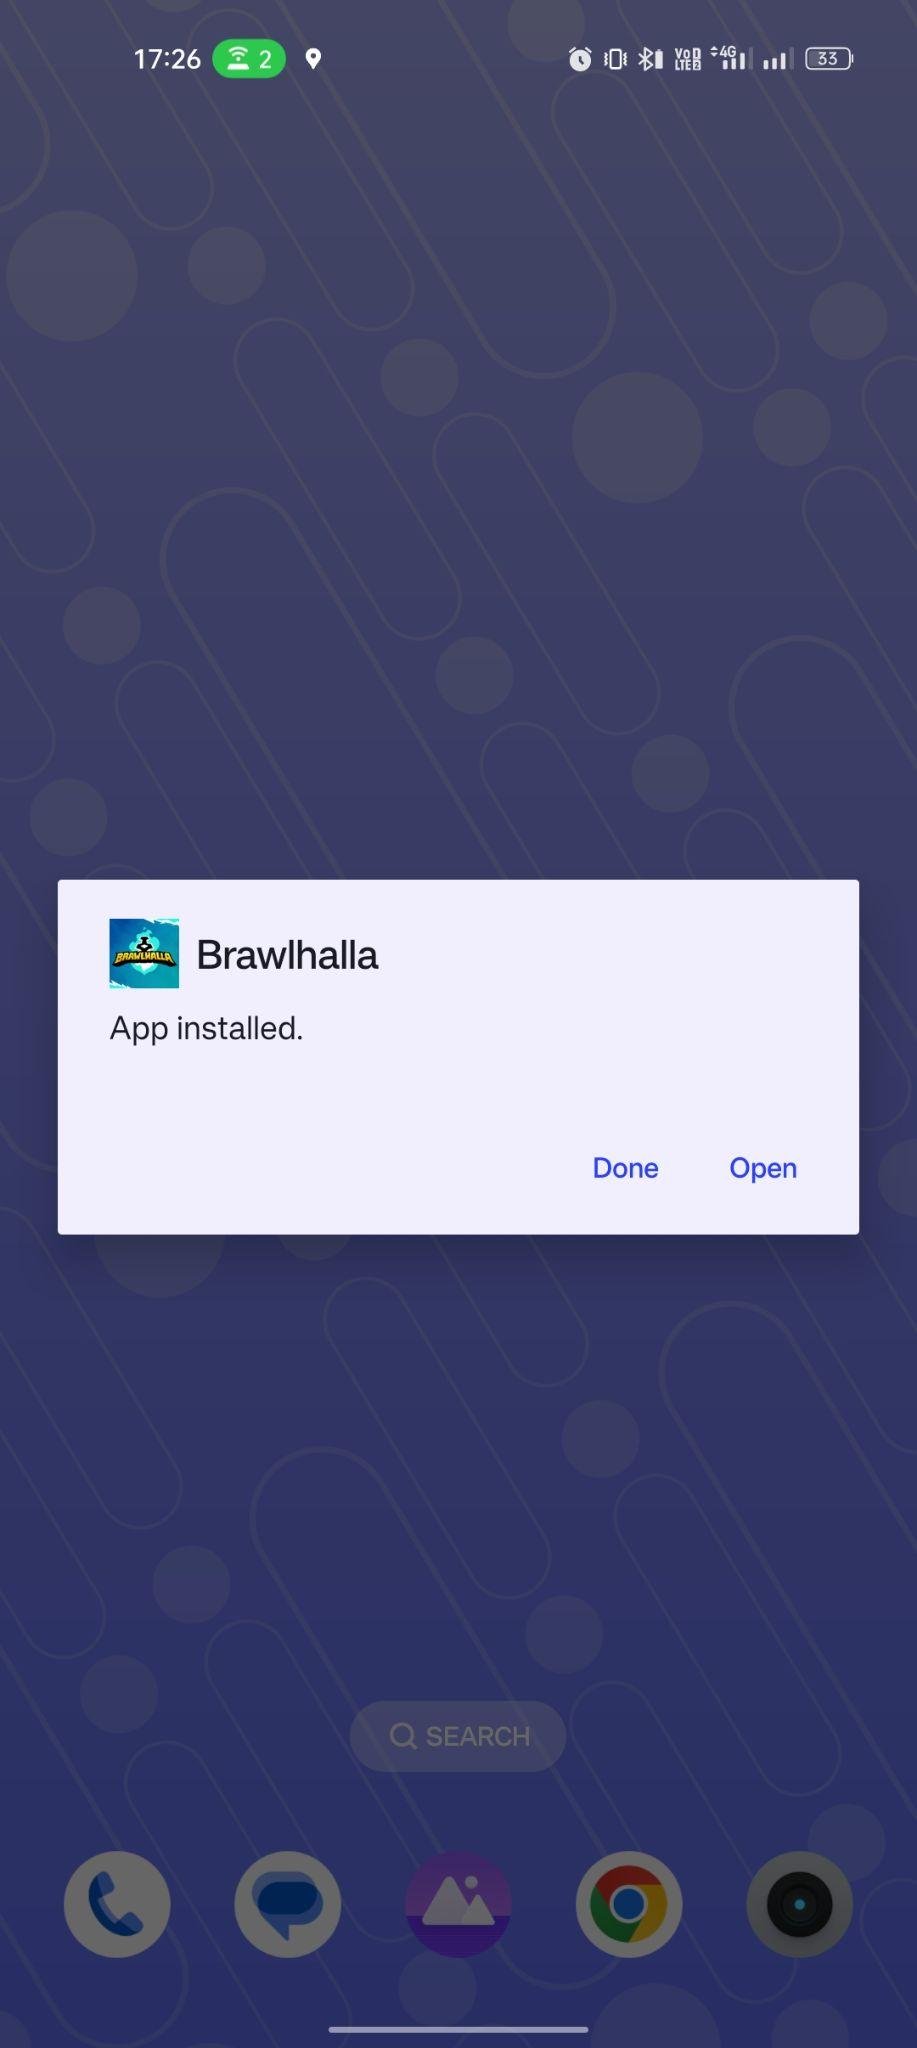 Brawhalla apk installed